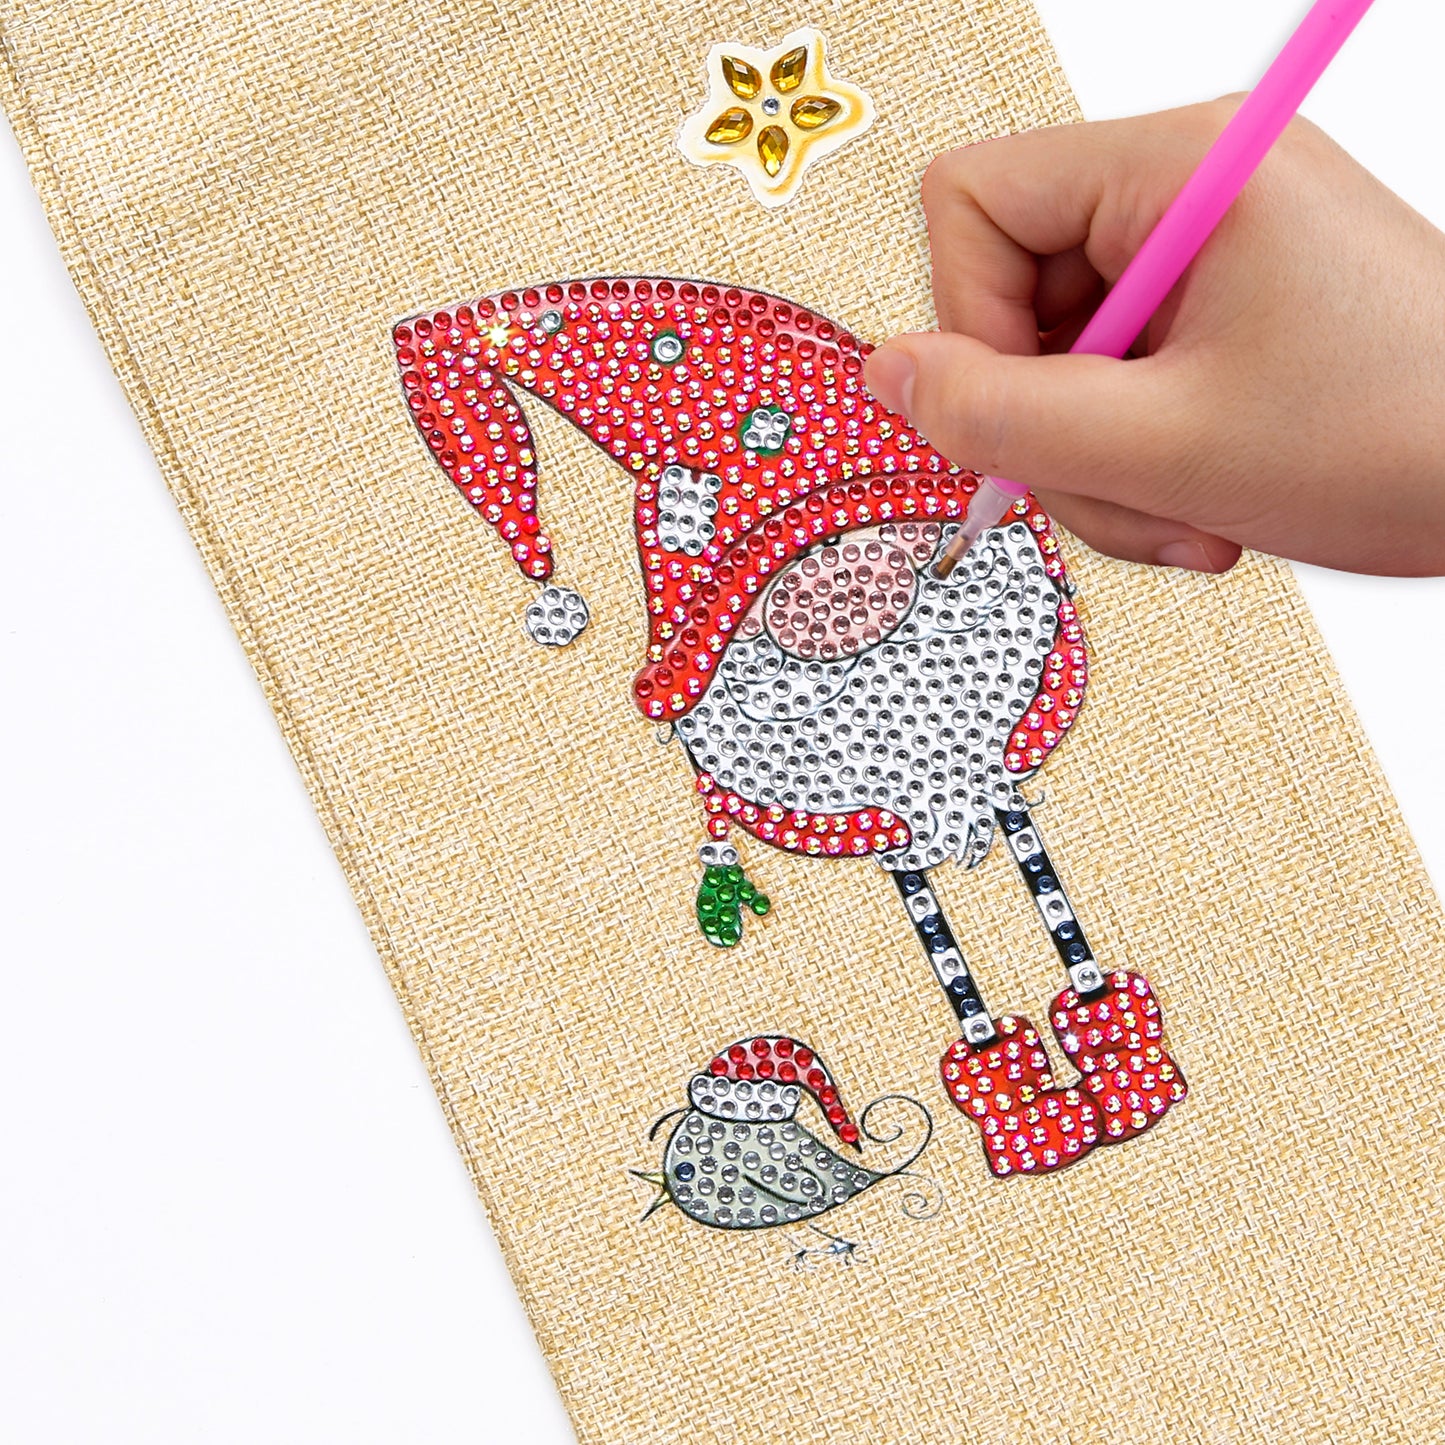 DIY Diamond Christmas Decoration | Christmas Goblin | Red Wine Gift Bag